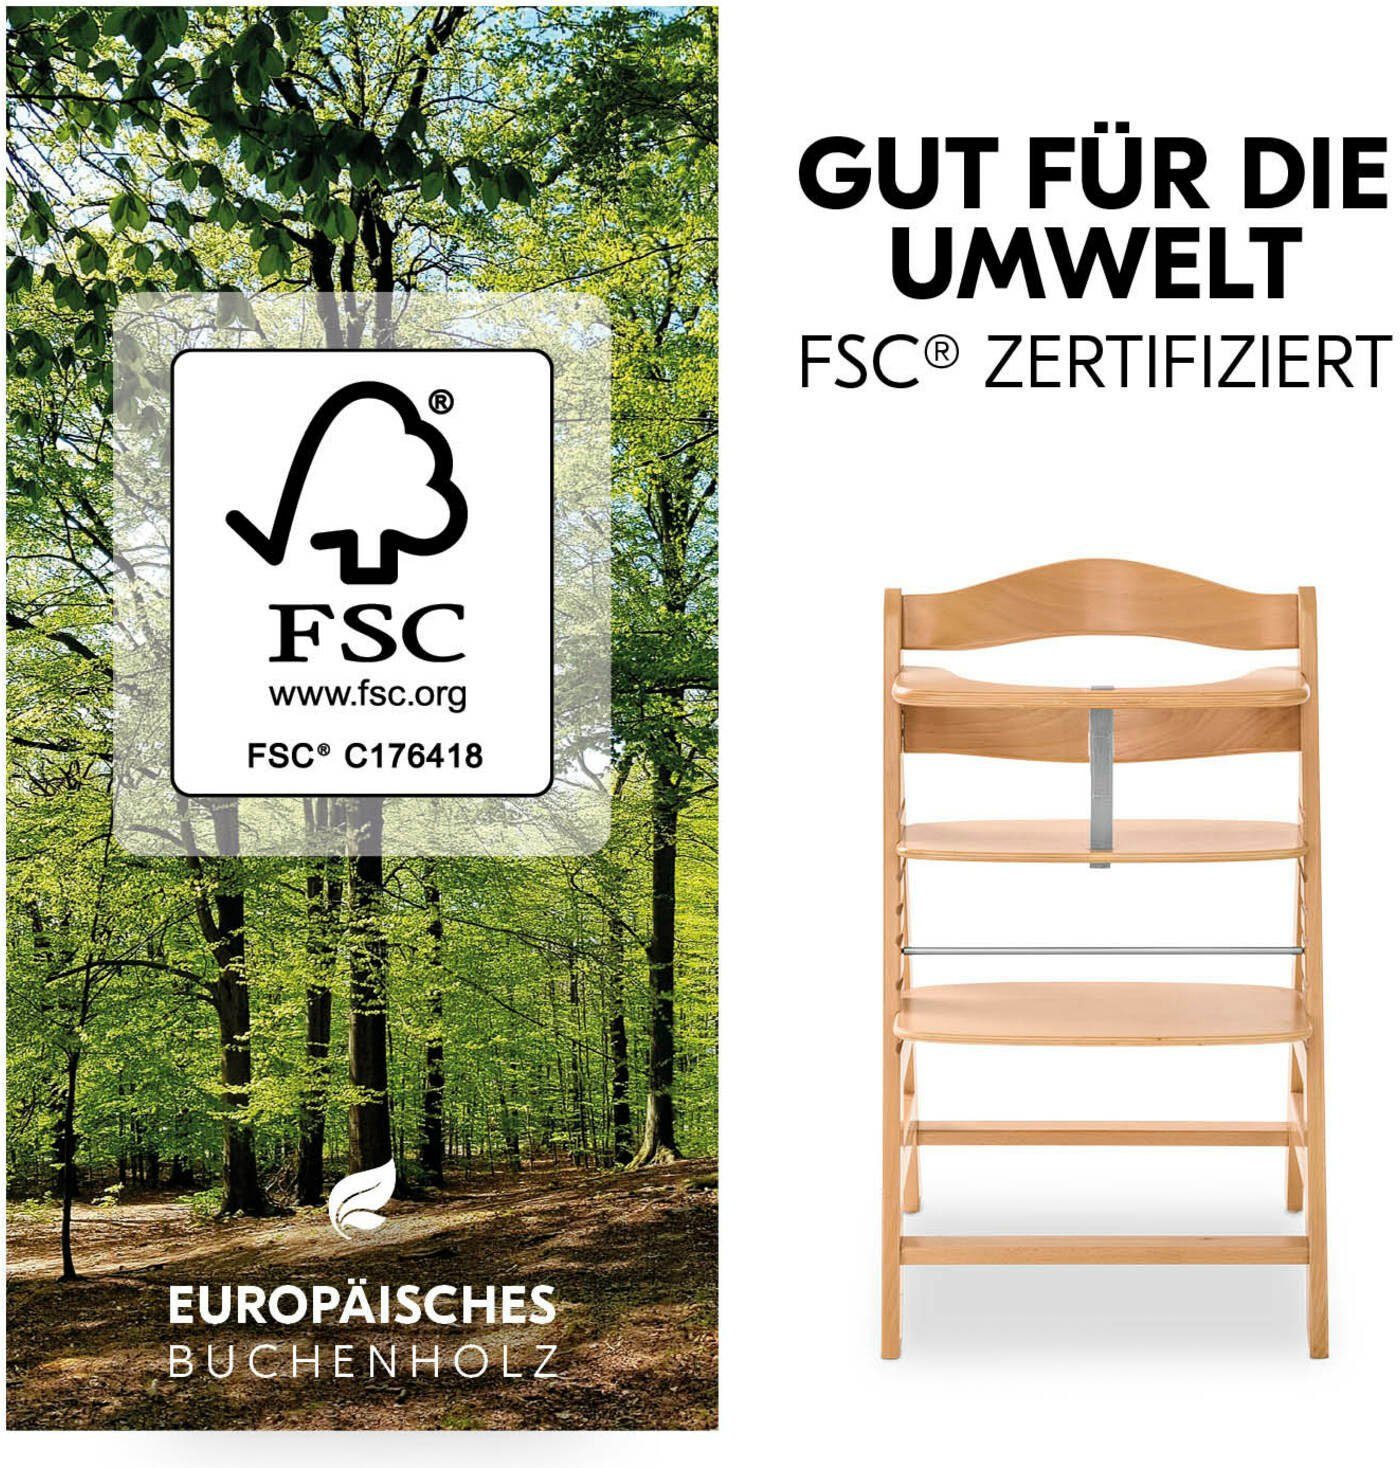 Hauck Hochstuhl Newborn Set, mit - FSC® Wald Alpha Newborn - Nature Grey, weltweit schützt Aufsatz